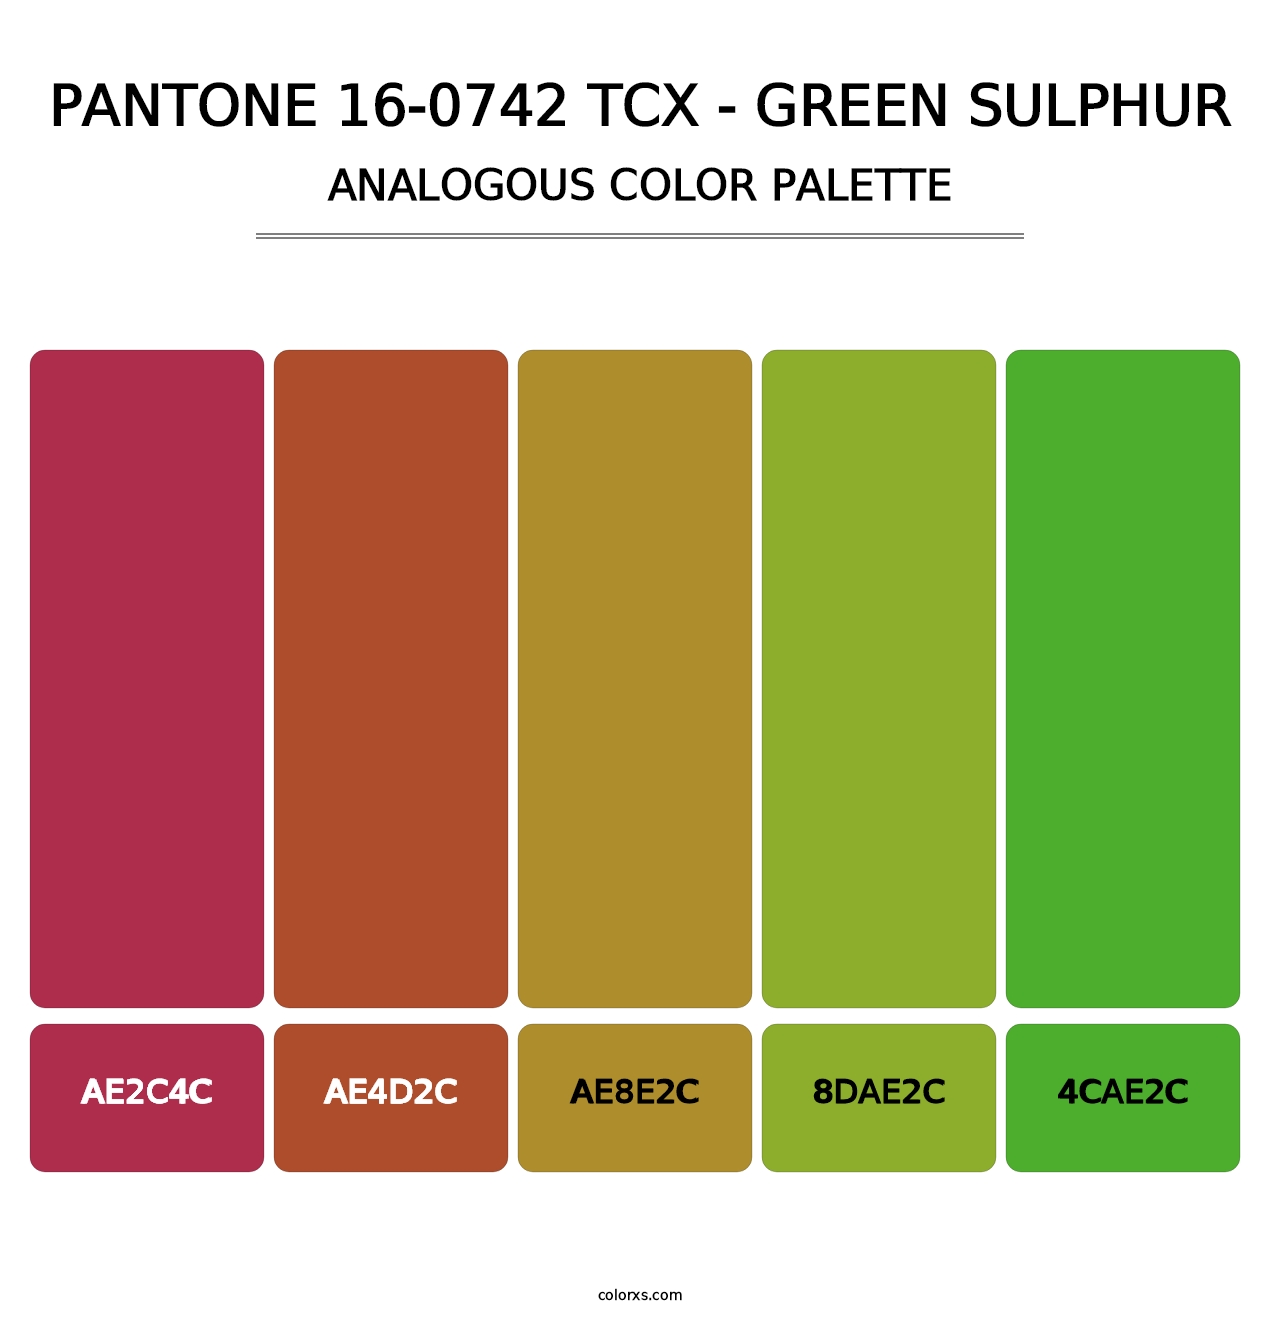 PANTONE 16-0742 TCX - Green Sulphur - Analogous Color Palette